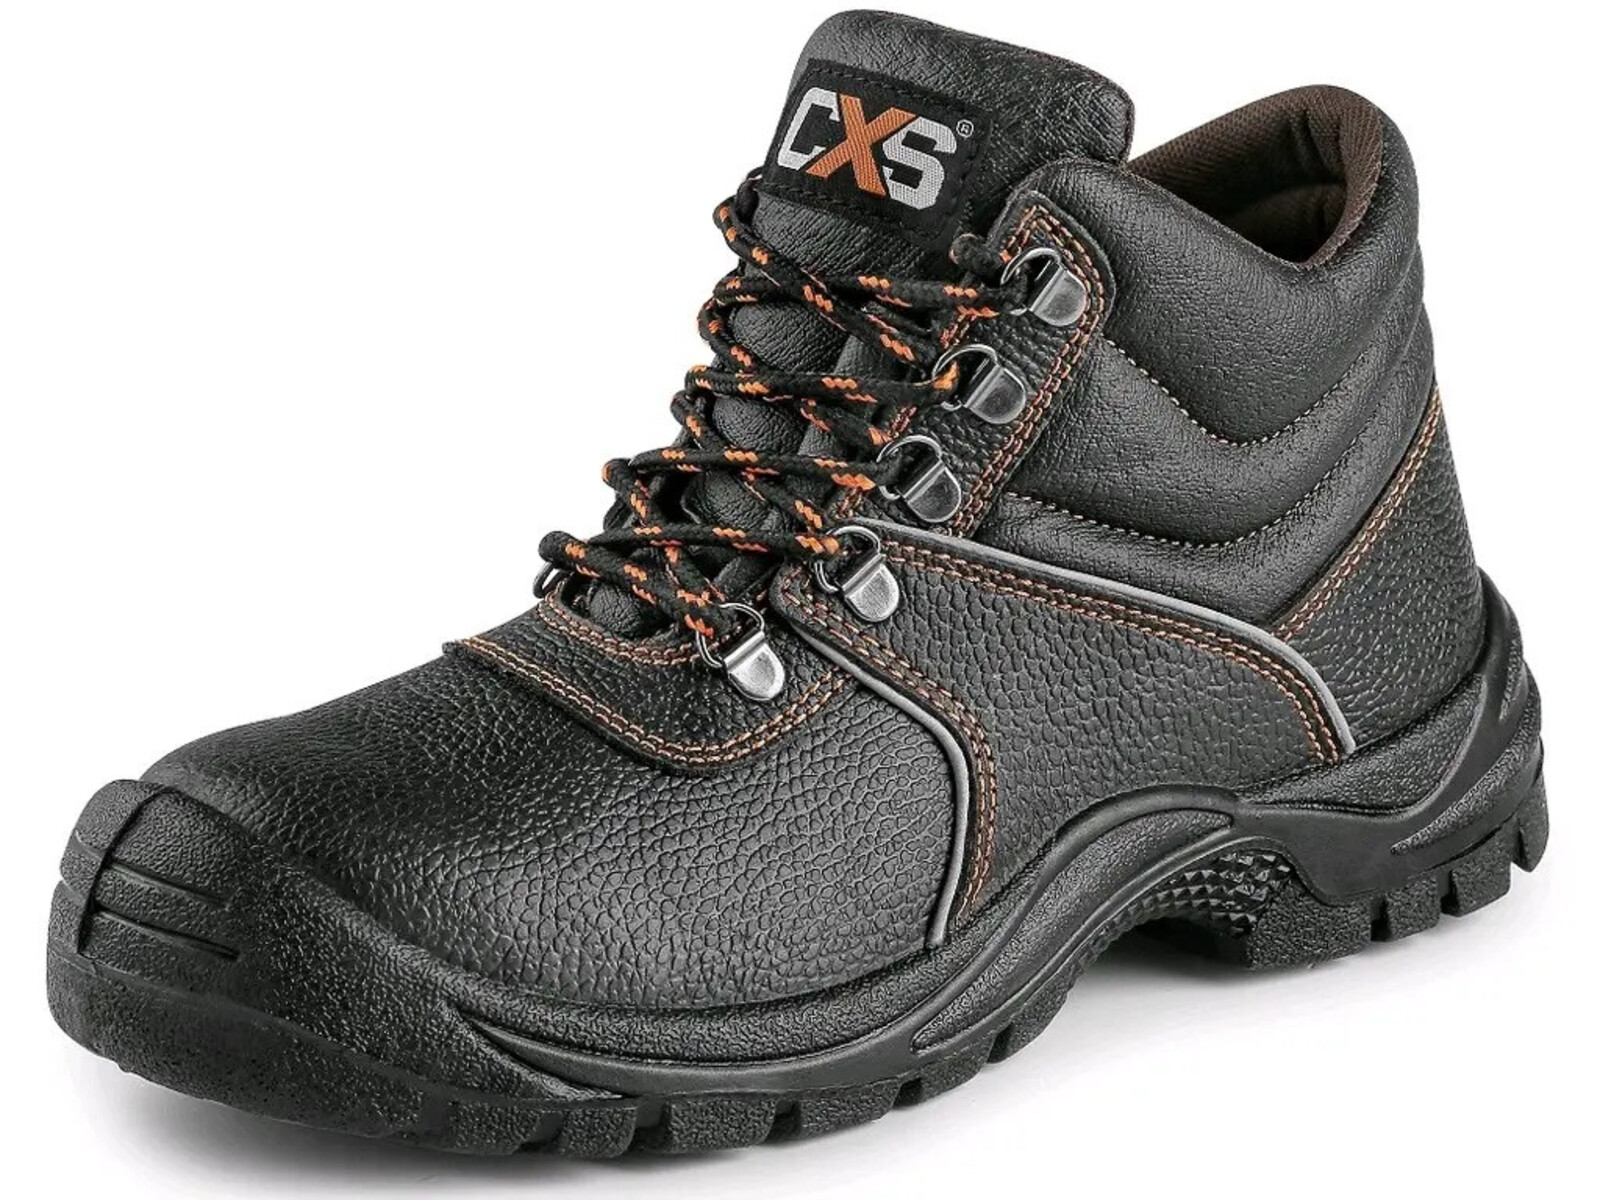 Bezpečnostná členková obuv CXS Stone Marble S2 SRC - veľkosť: 46, farba: čierna/oranžová